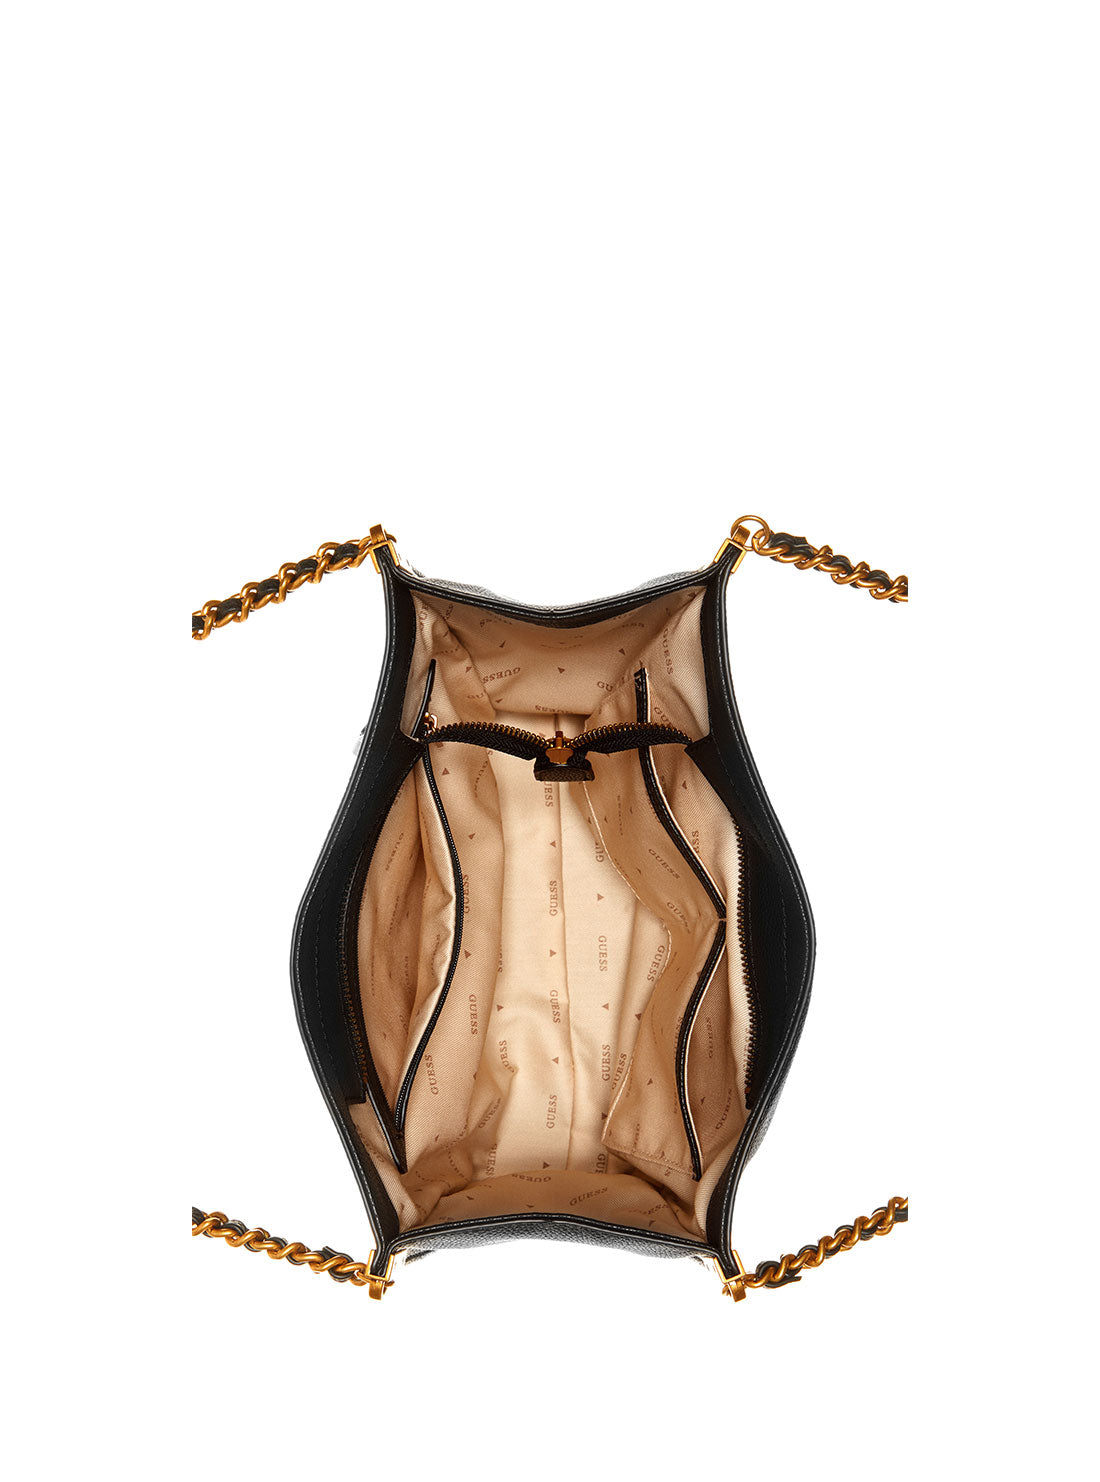 GUESS Women's Black Maranta Small Shoulder Satchel Bag VB897408 Inside View